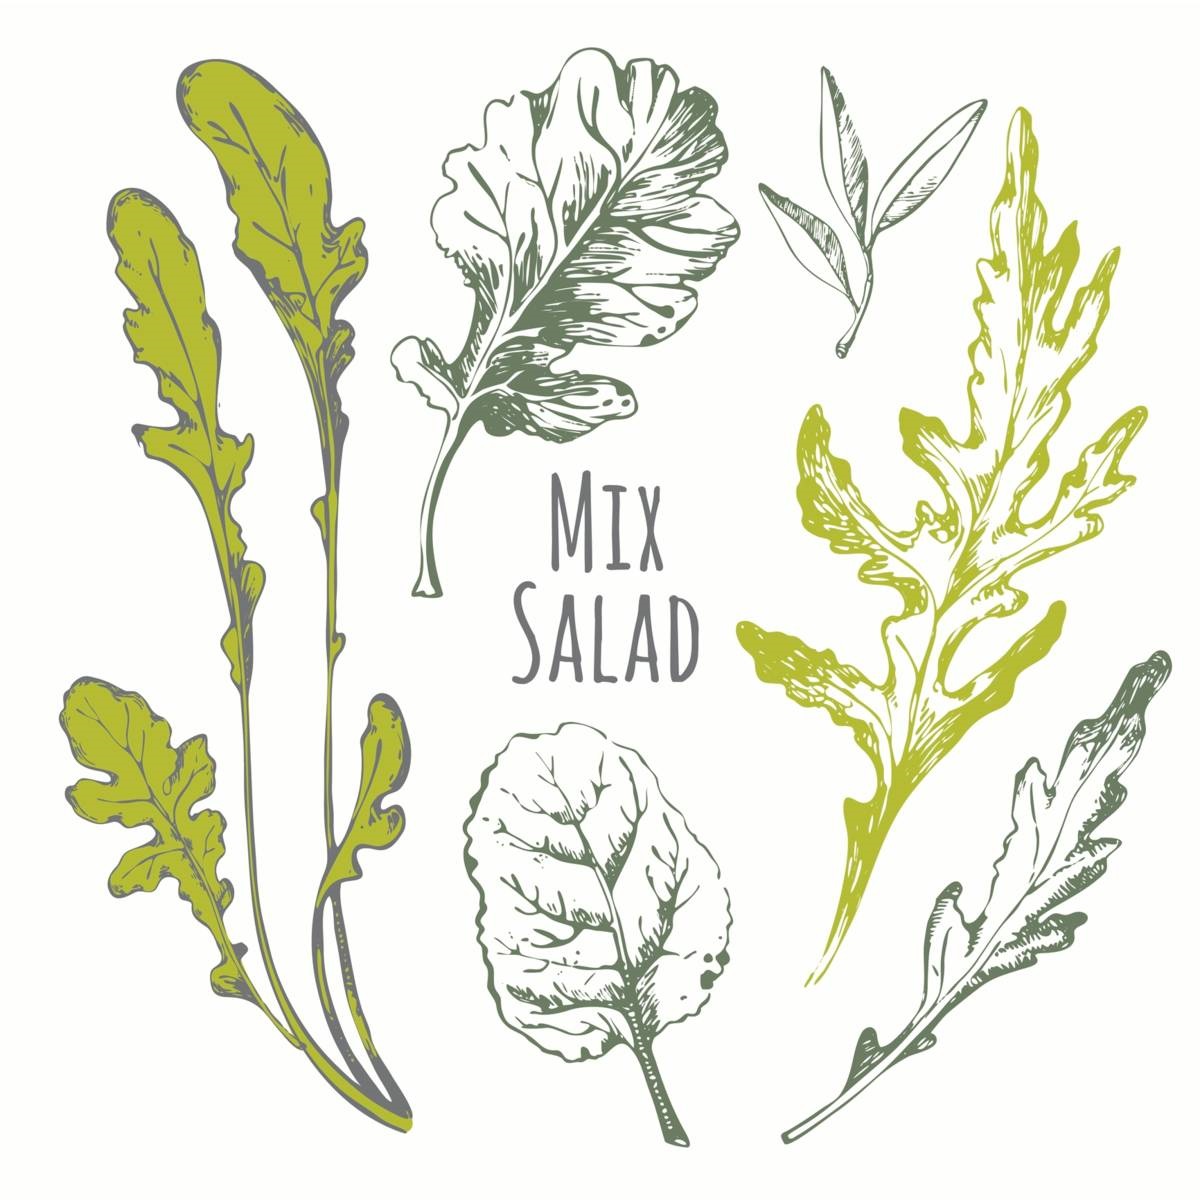 moestuinklusjes - mix salad - illustraties van slablaadjes